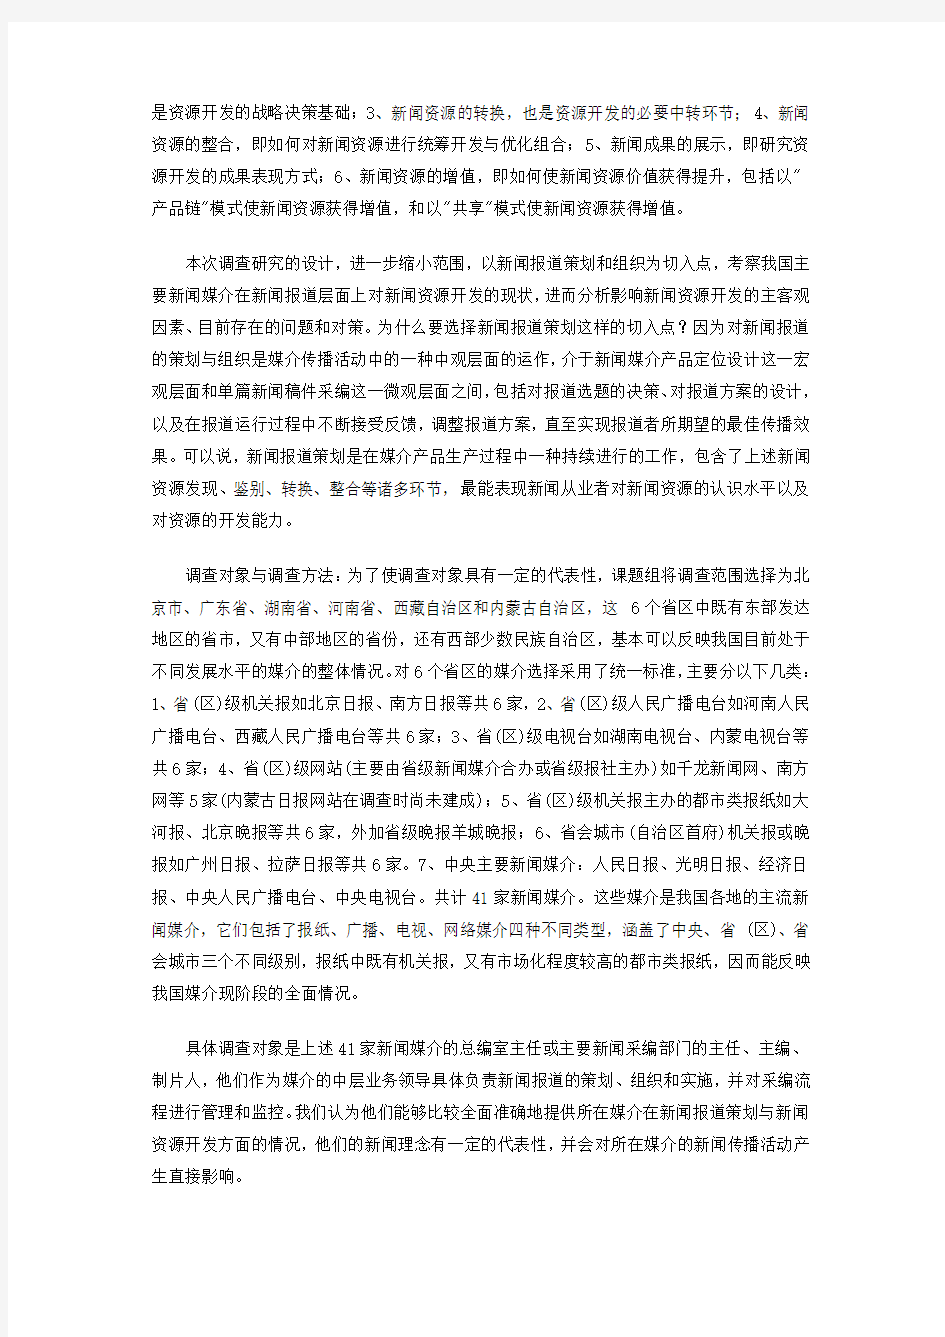 中国传媒新闻资源开发现状研究调查报告